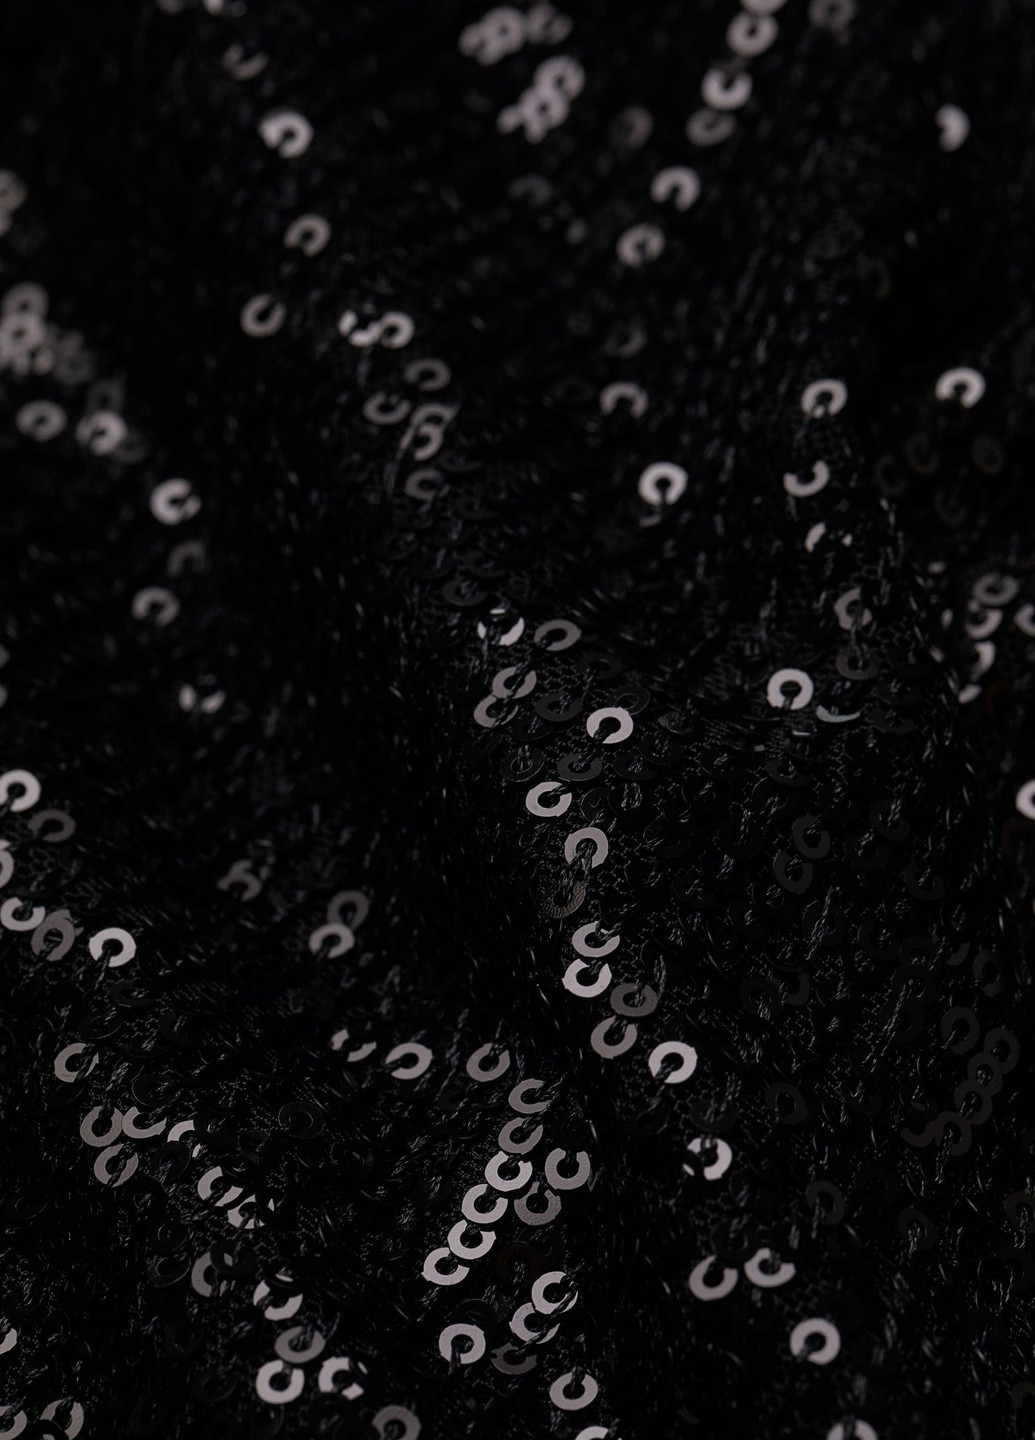 Черное коктейльное платье с пайетками H&M однотонное